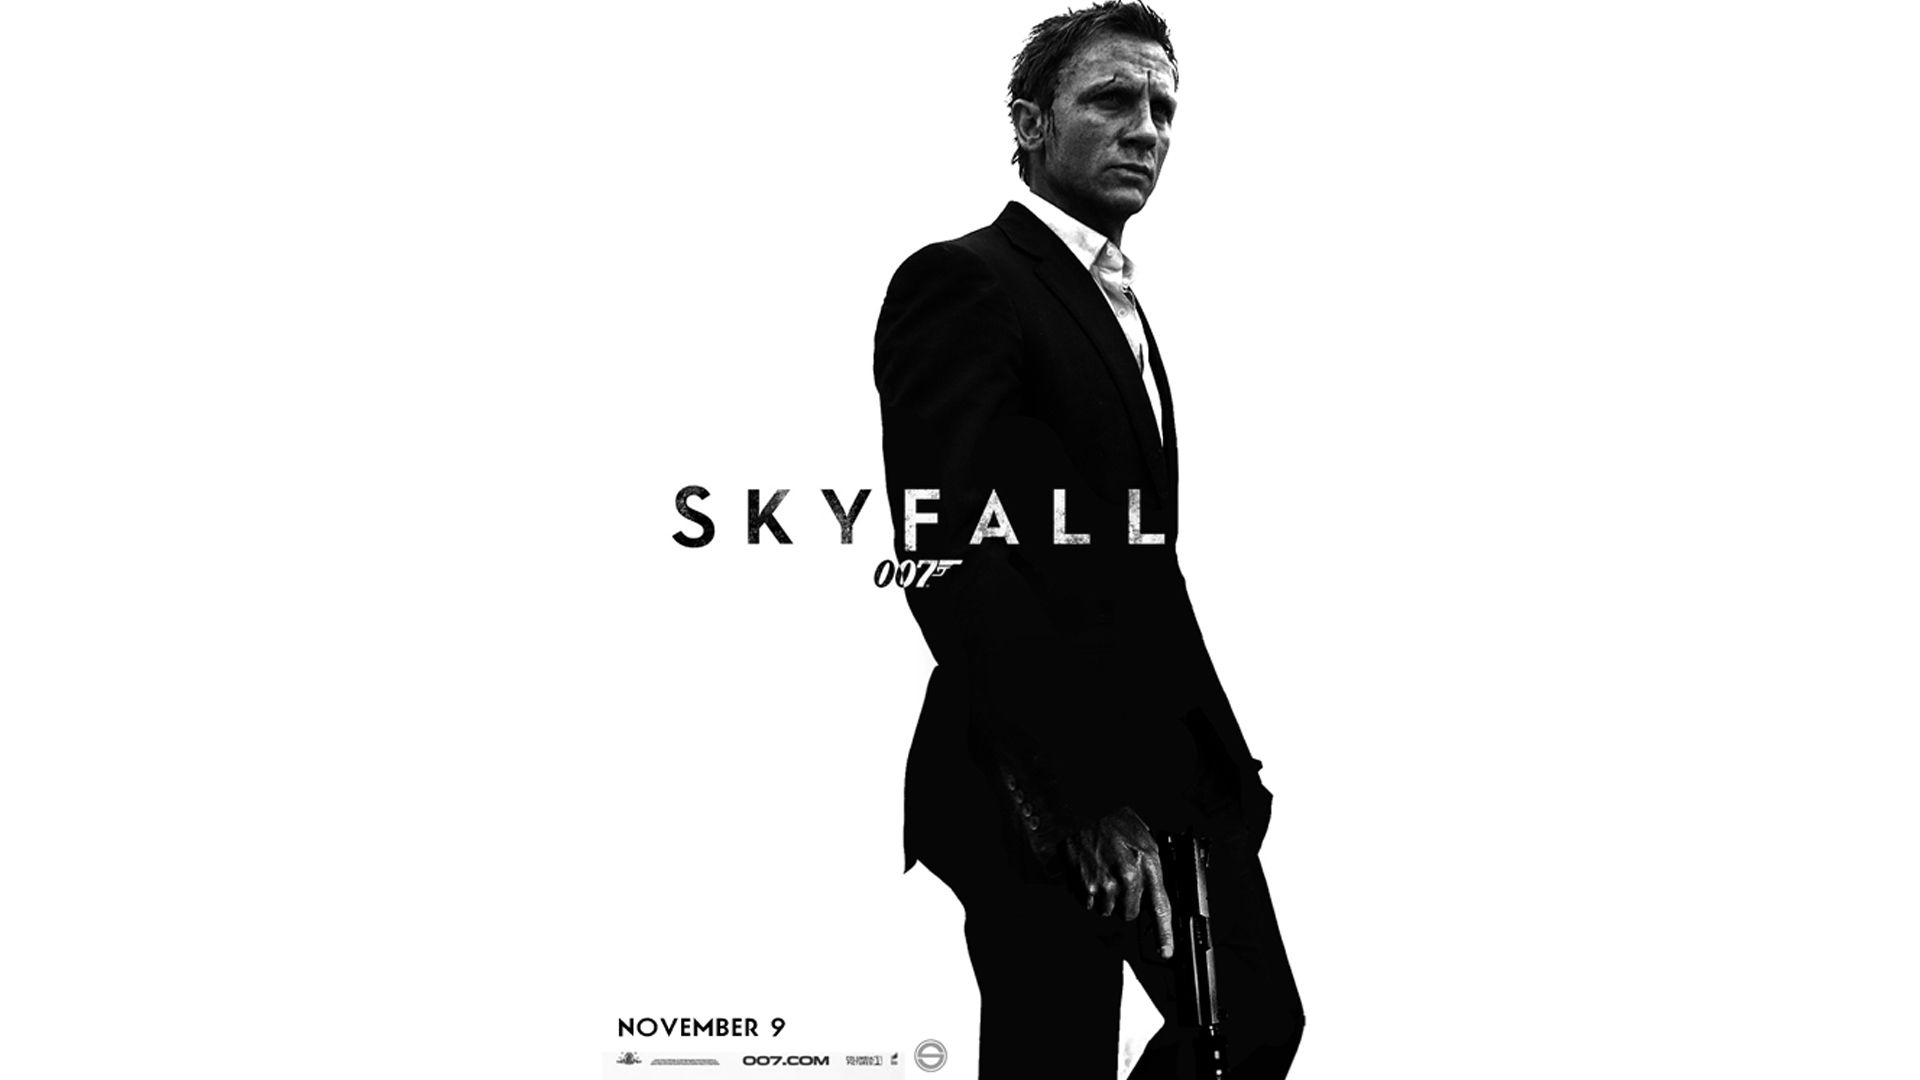 James Bond Skyfall 007 Wallpapers 2012